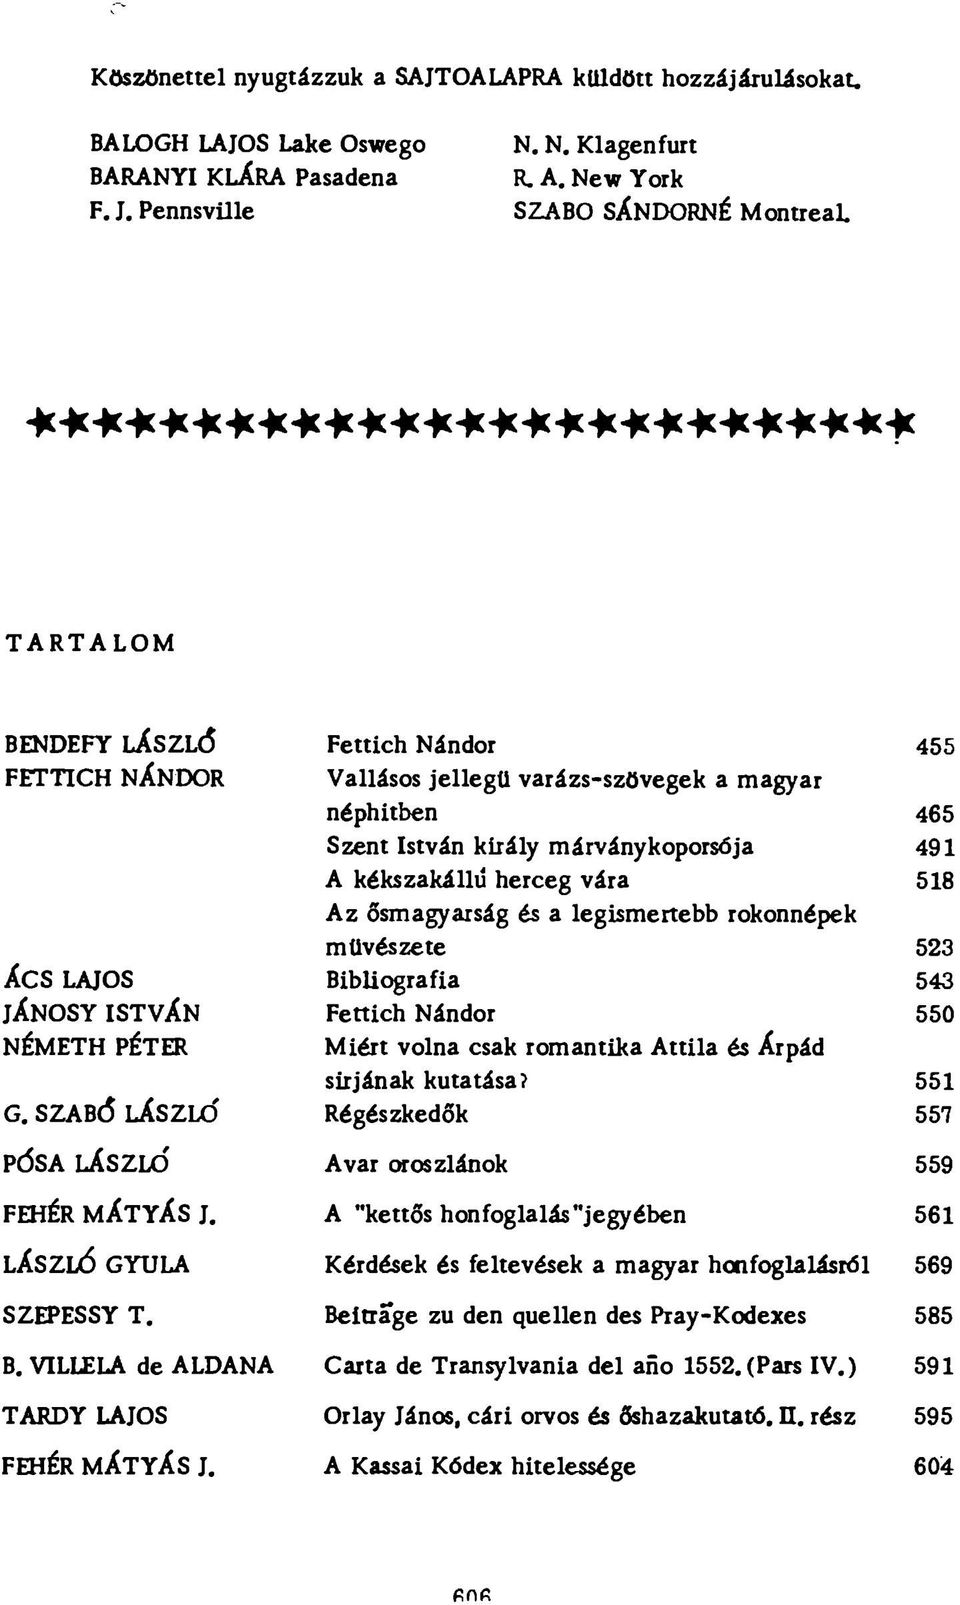 Fettich Nándor 455 Vallásos jellegű varázs-szövegek a magyar néphitben 465 Szent István király márványkoporsója 491 A kékszakállú herceg vára 518 Az ősmagyarság és a legismertebb rokonnépek művészete